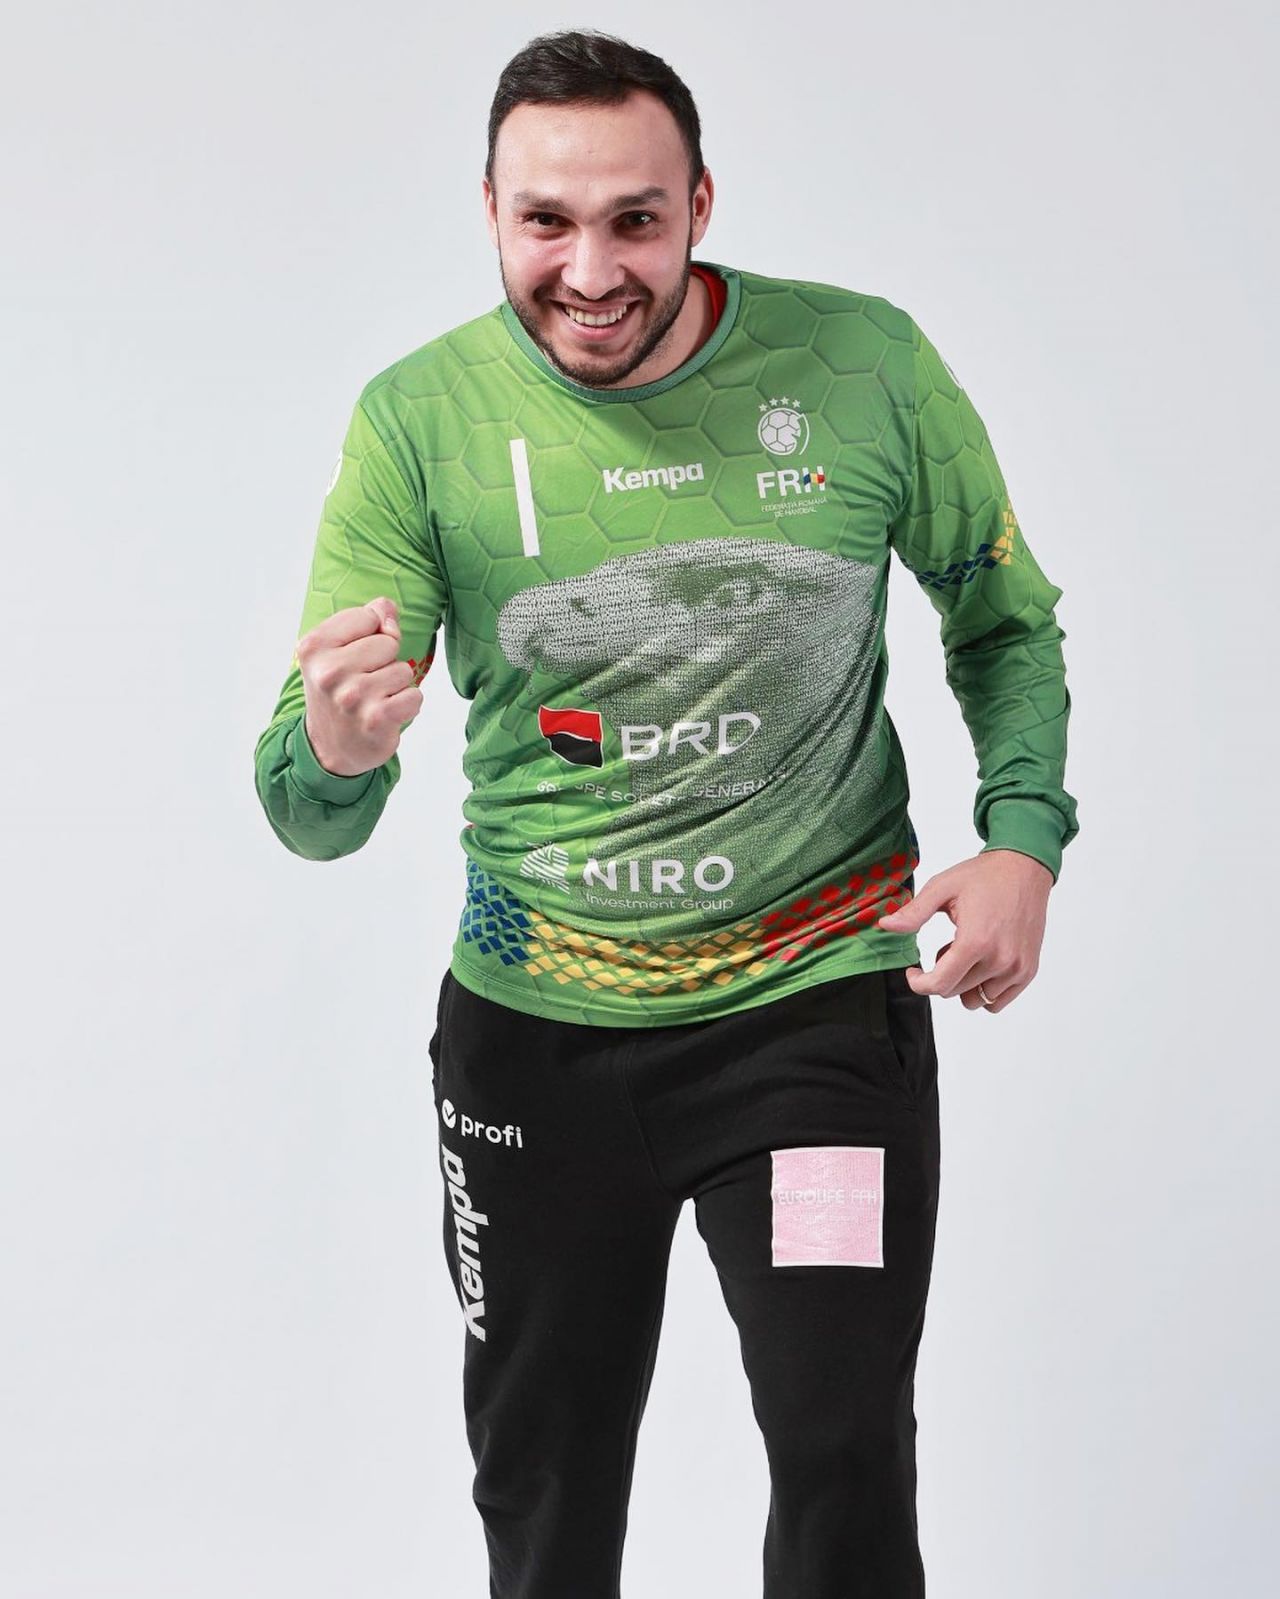 Ionuț Iancu a făcut minuni în poarta României și a fost inclus de EHF în TOP 5 parade de la Campionatul European de handbal masculin_2